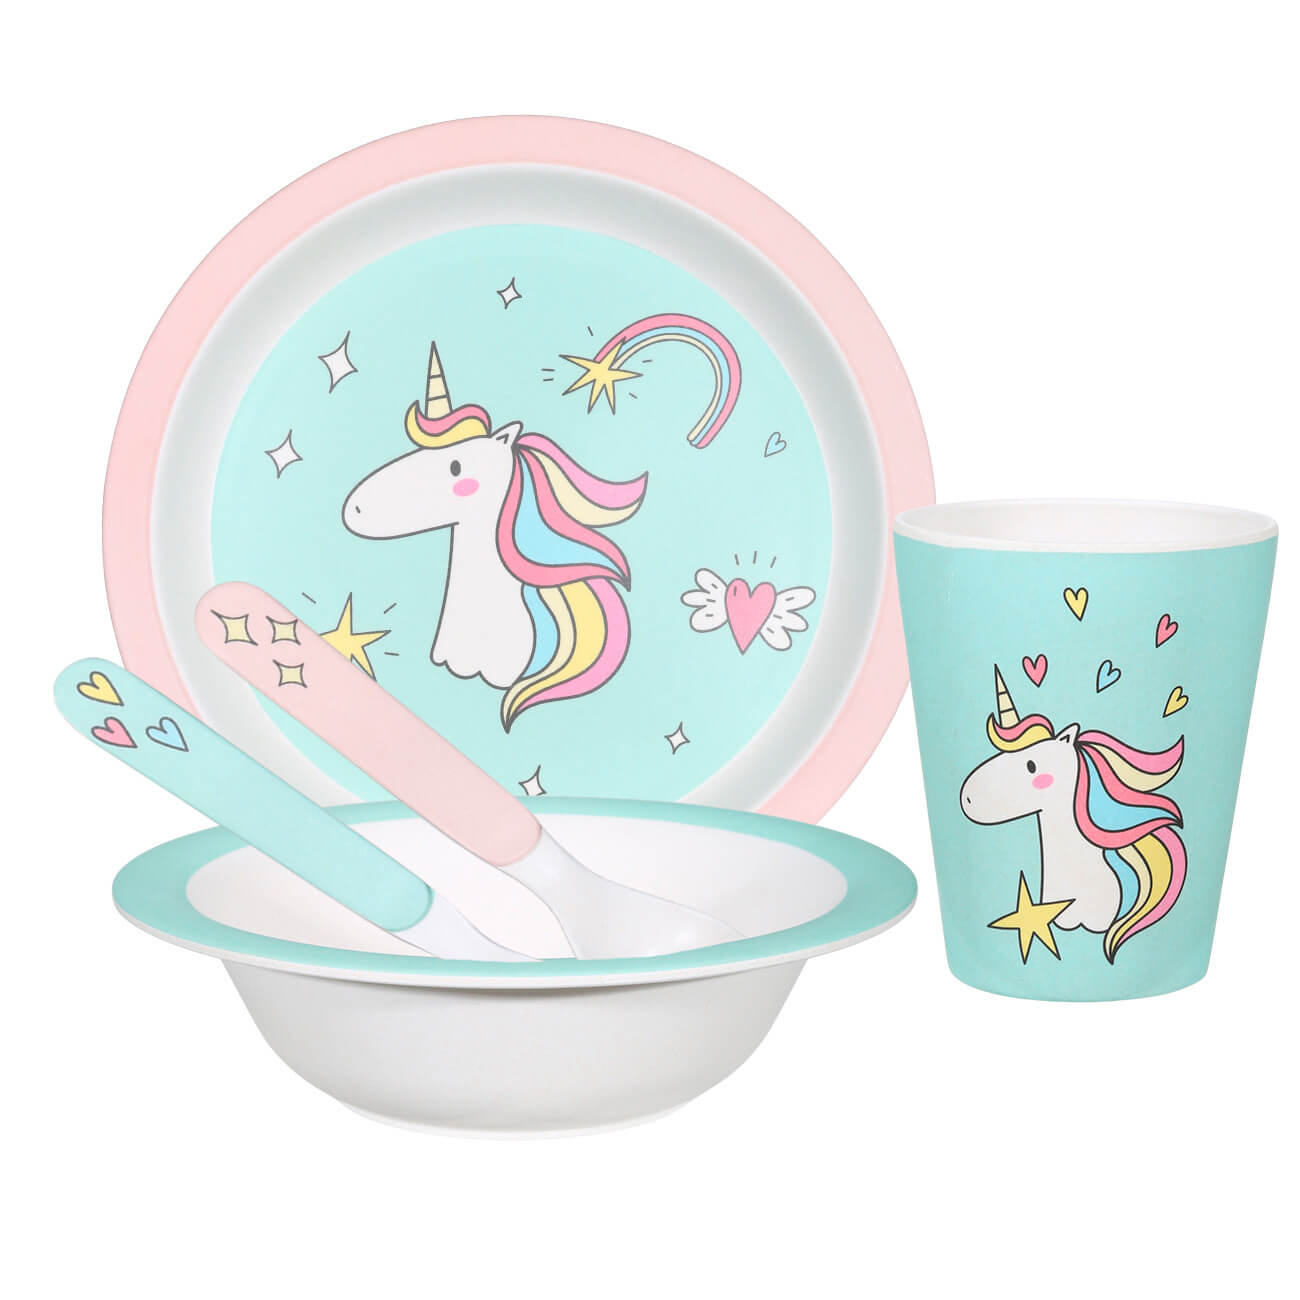 Набор посуды, детский, 5 пр, бамбук, розово-мятный, Единорог, Unicorn набор для творчества 1 пр роспись гипс единорог unicorn